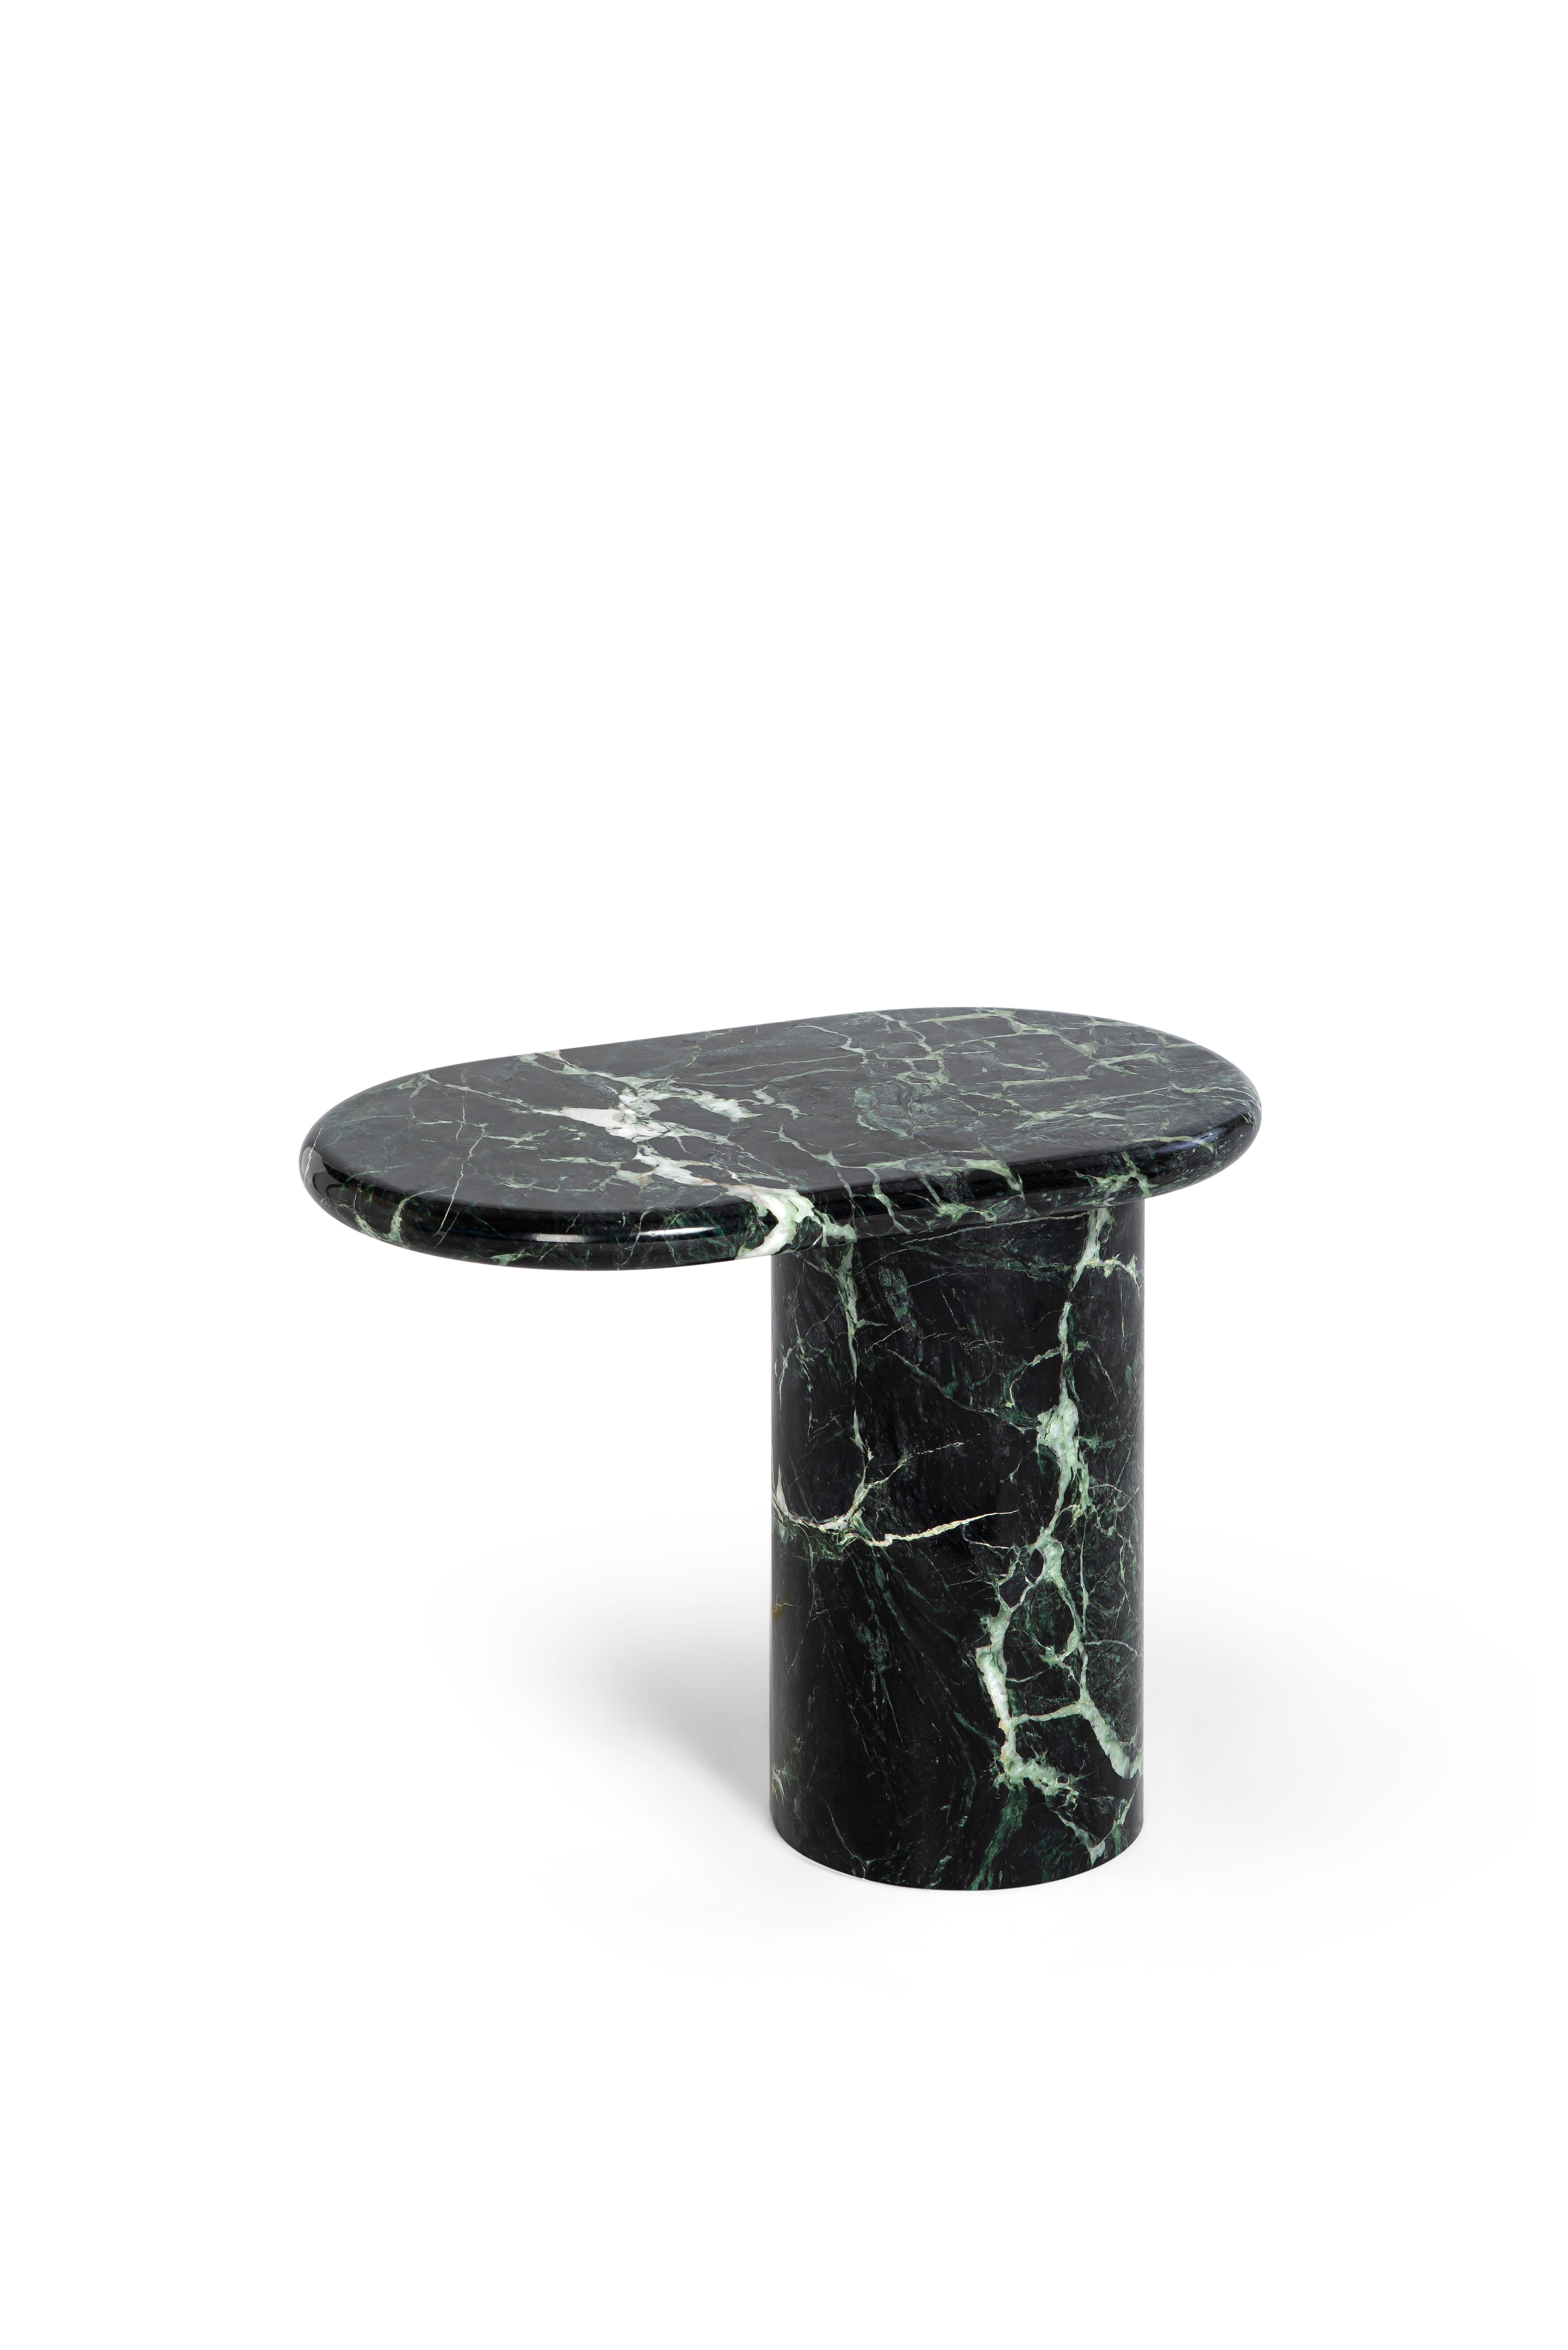 21st Century Matteo Zorzenoni Cantilever S Coffee Table Black Marquinia Marble In New Condition For Sale In Tezze sul Brenta, IT